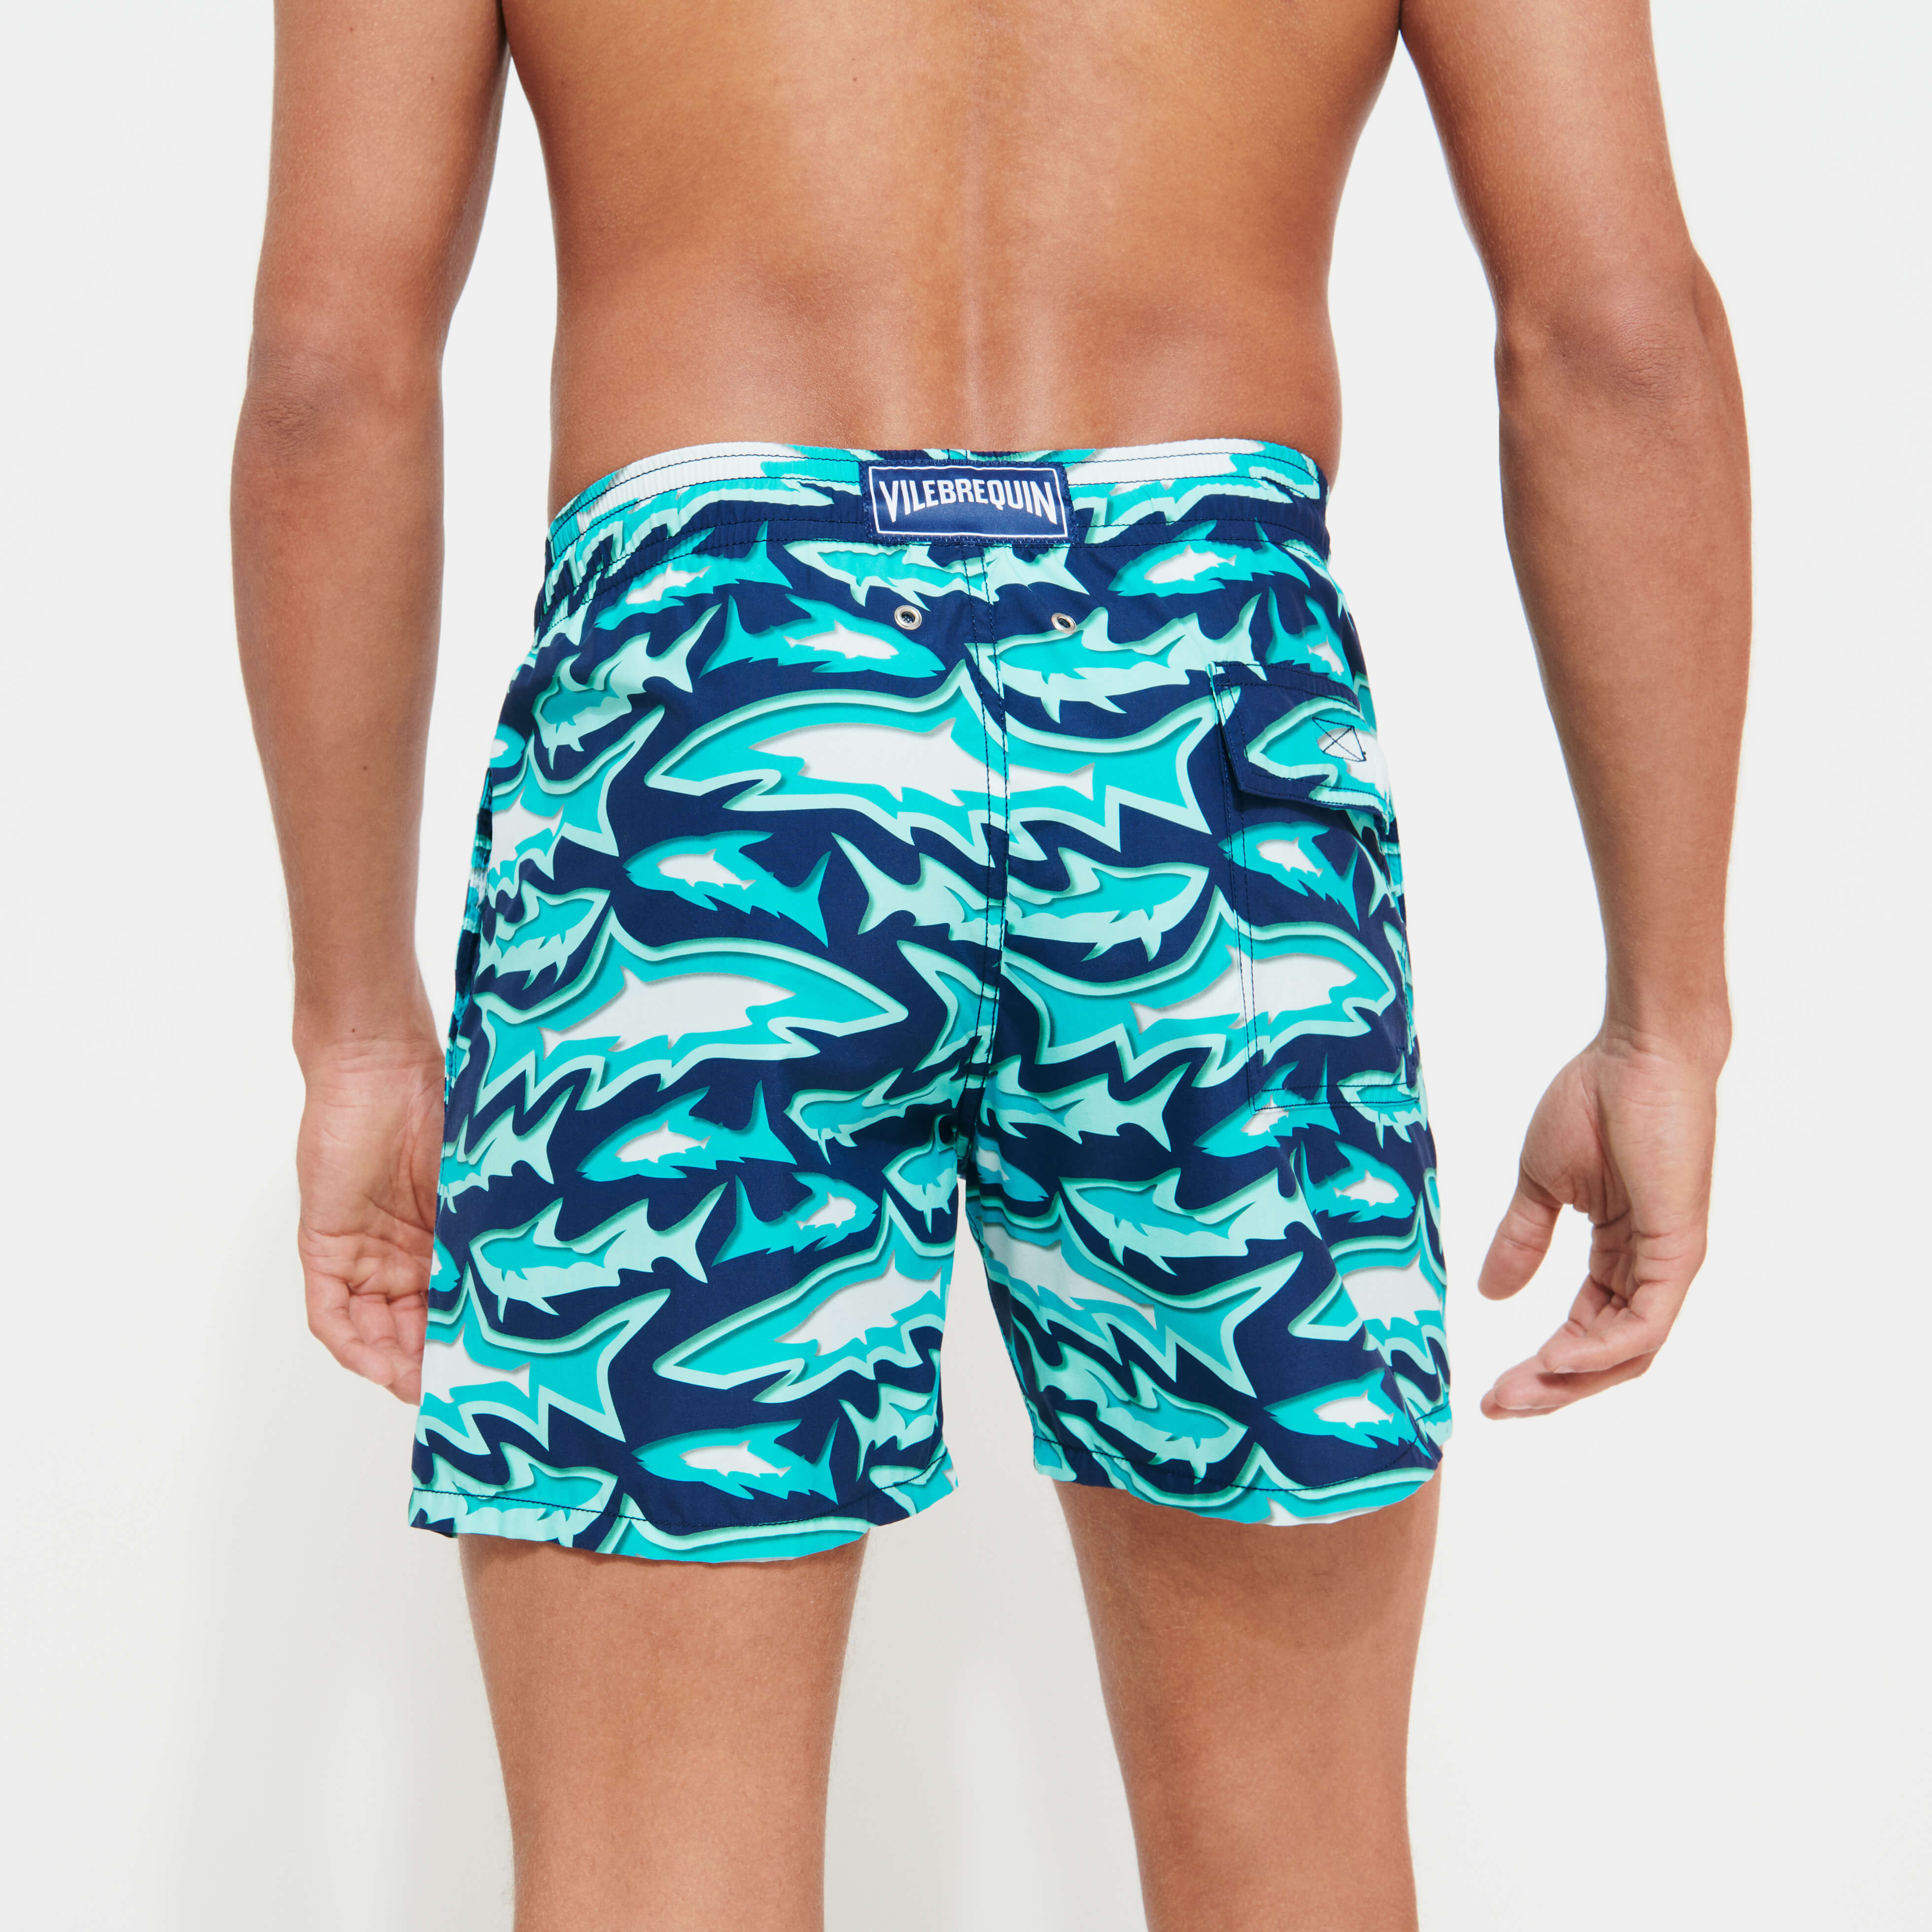 Vilebrequin Vilebrequin Blue Swim Shorts Size XL 34 Waist Great Condition 